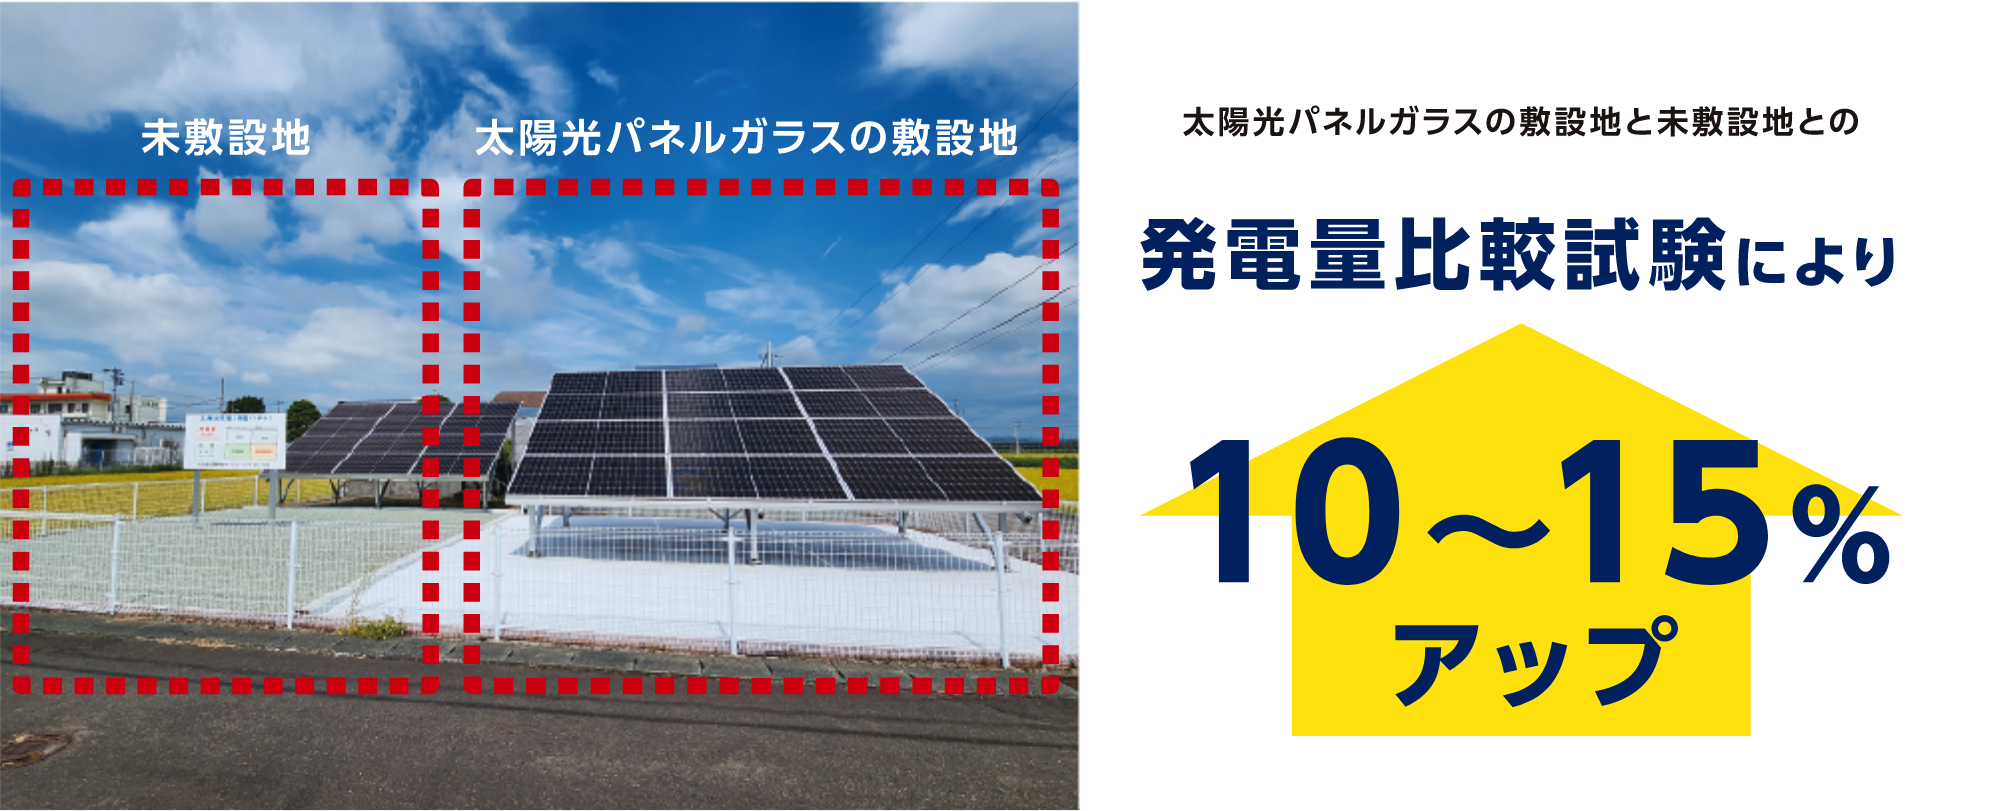 太陽光パネルガラスの敷設地と未敷設地との発電量比較試験により10~15%アップ